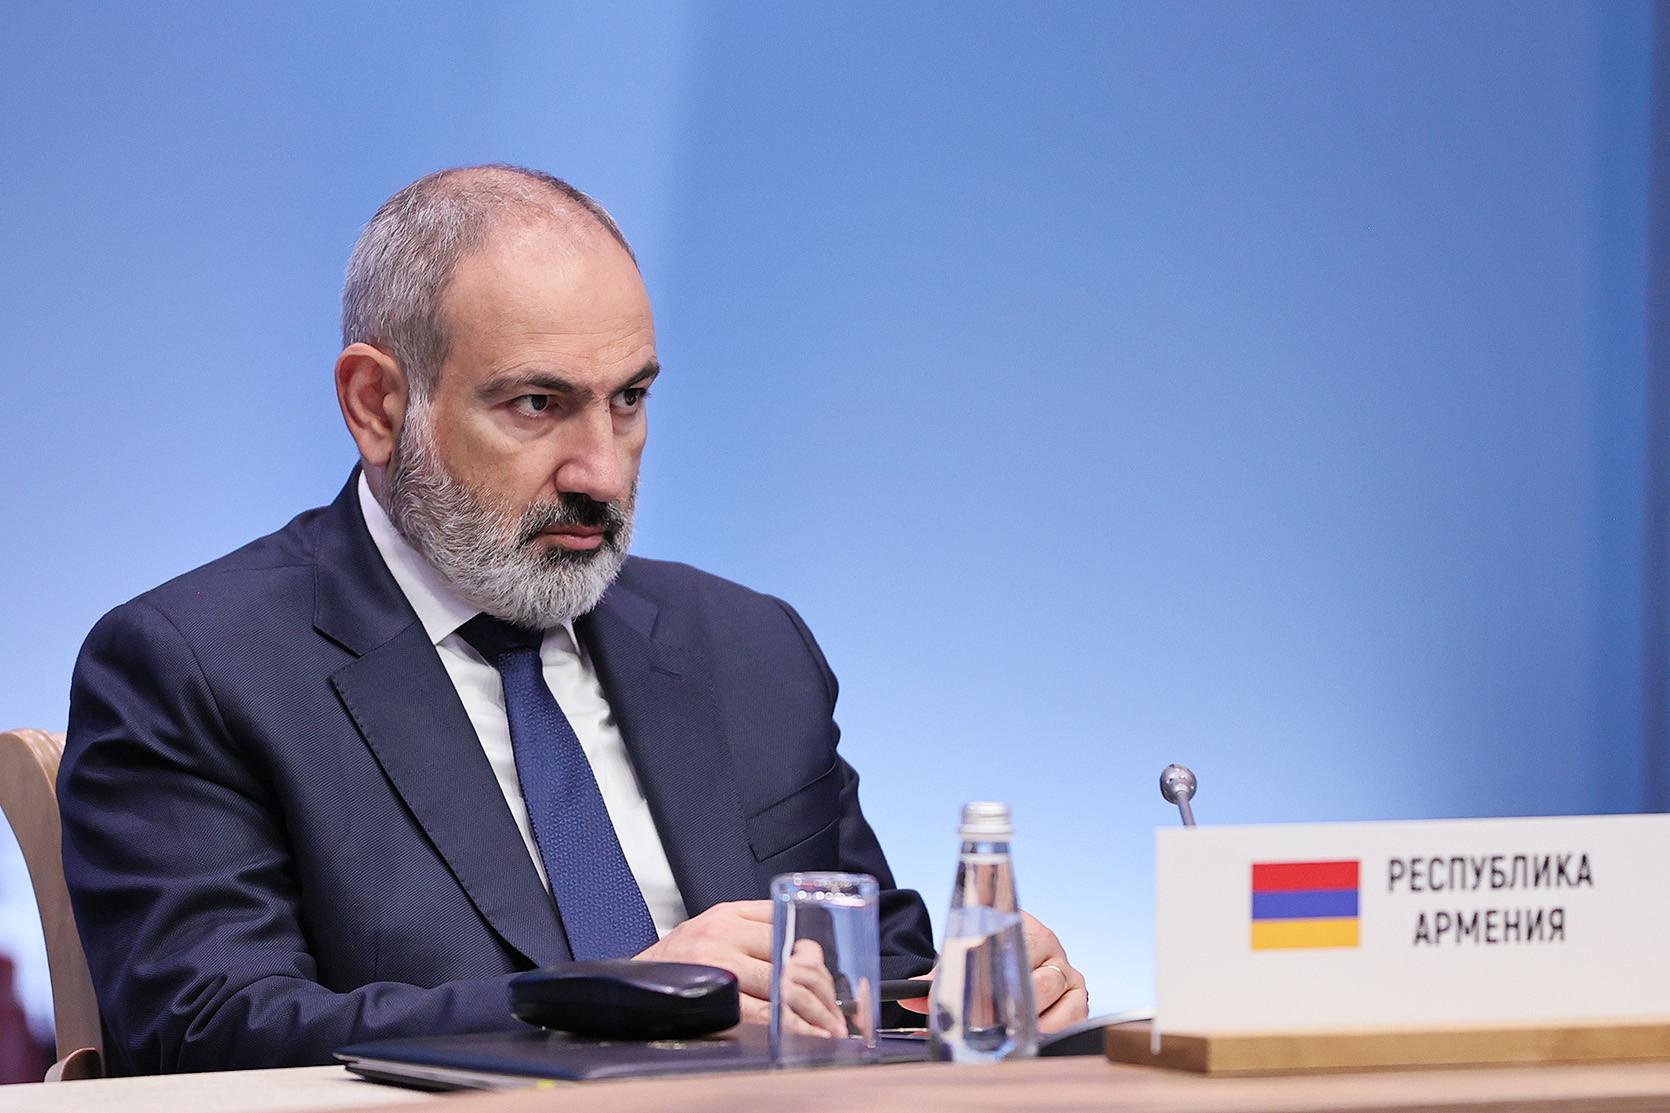 Премьер-министр Пашинян принял участие в заседании Совета глав правительств СНГ